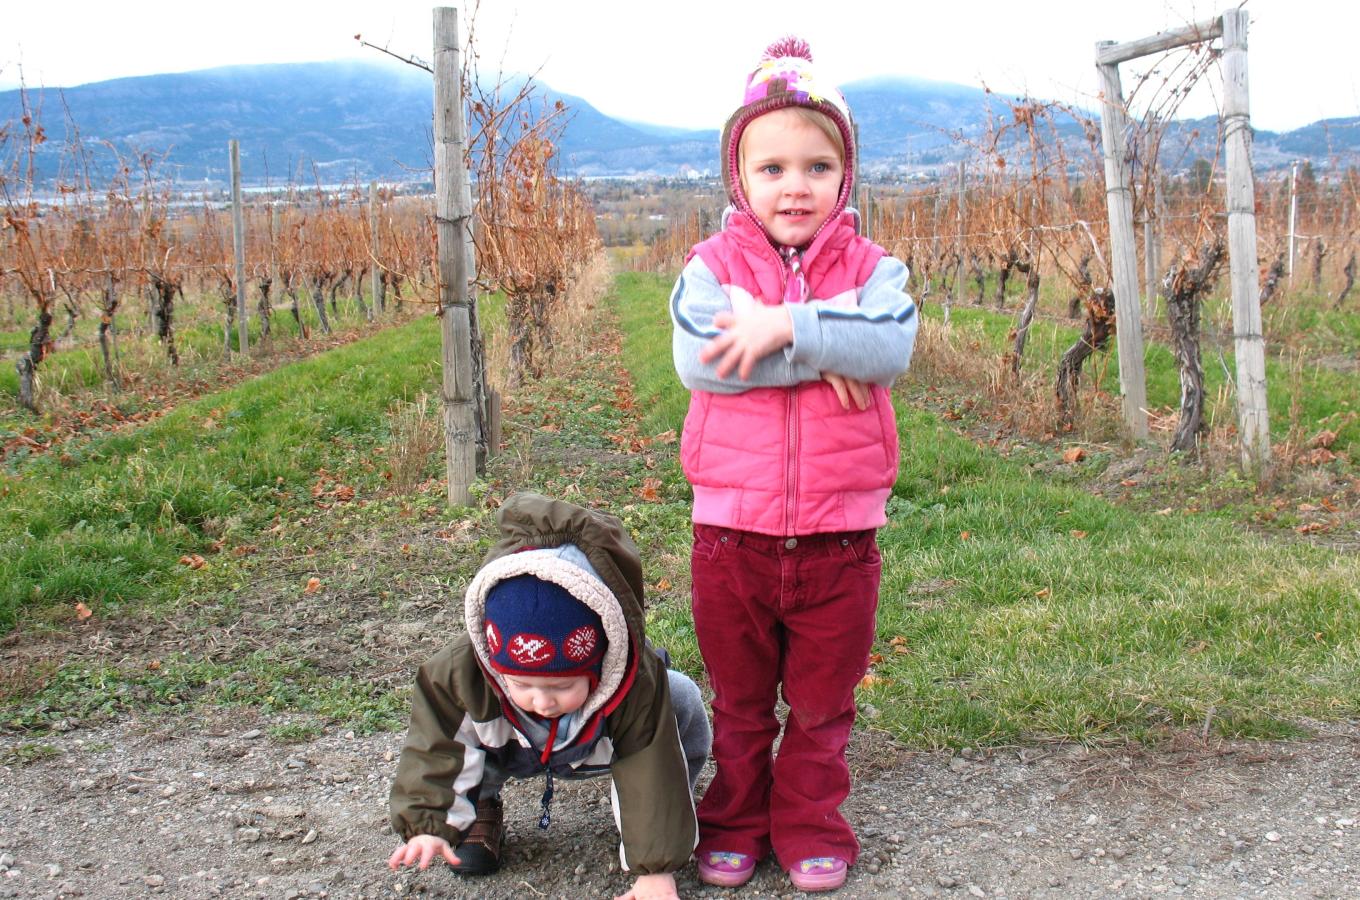 Children in vineyard